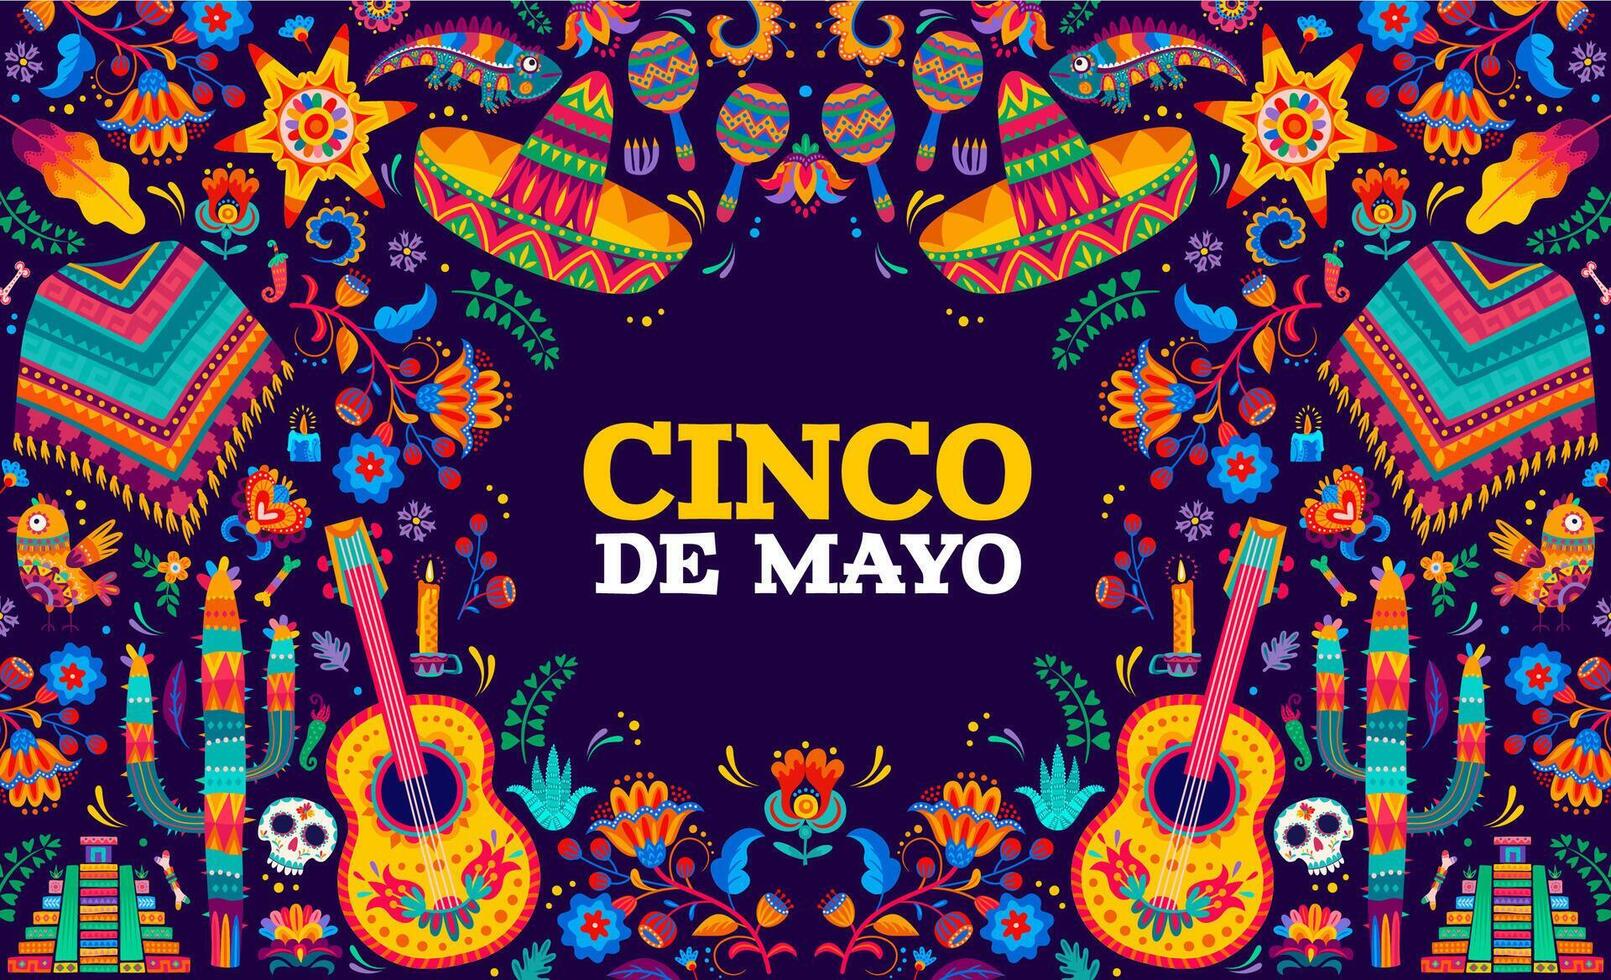 Cinco de mayo Mexican holiday alebrije banner vector